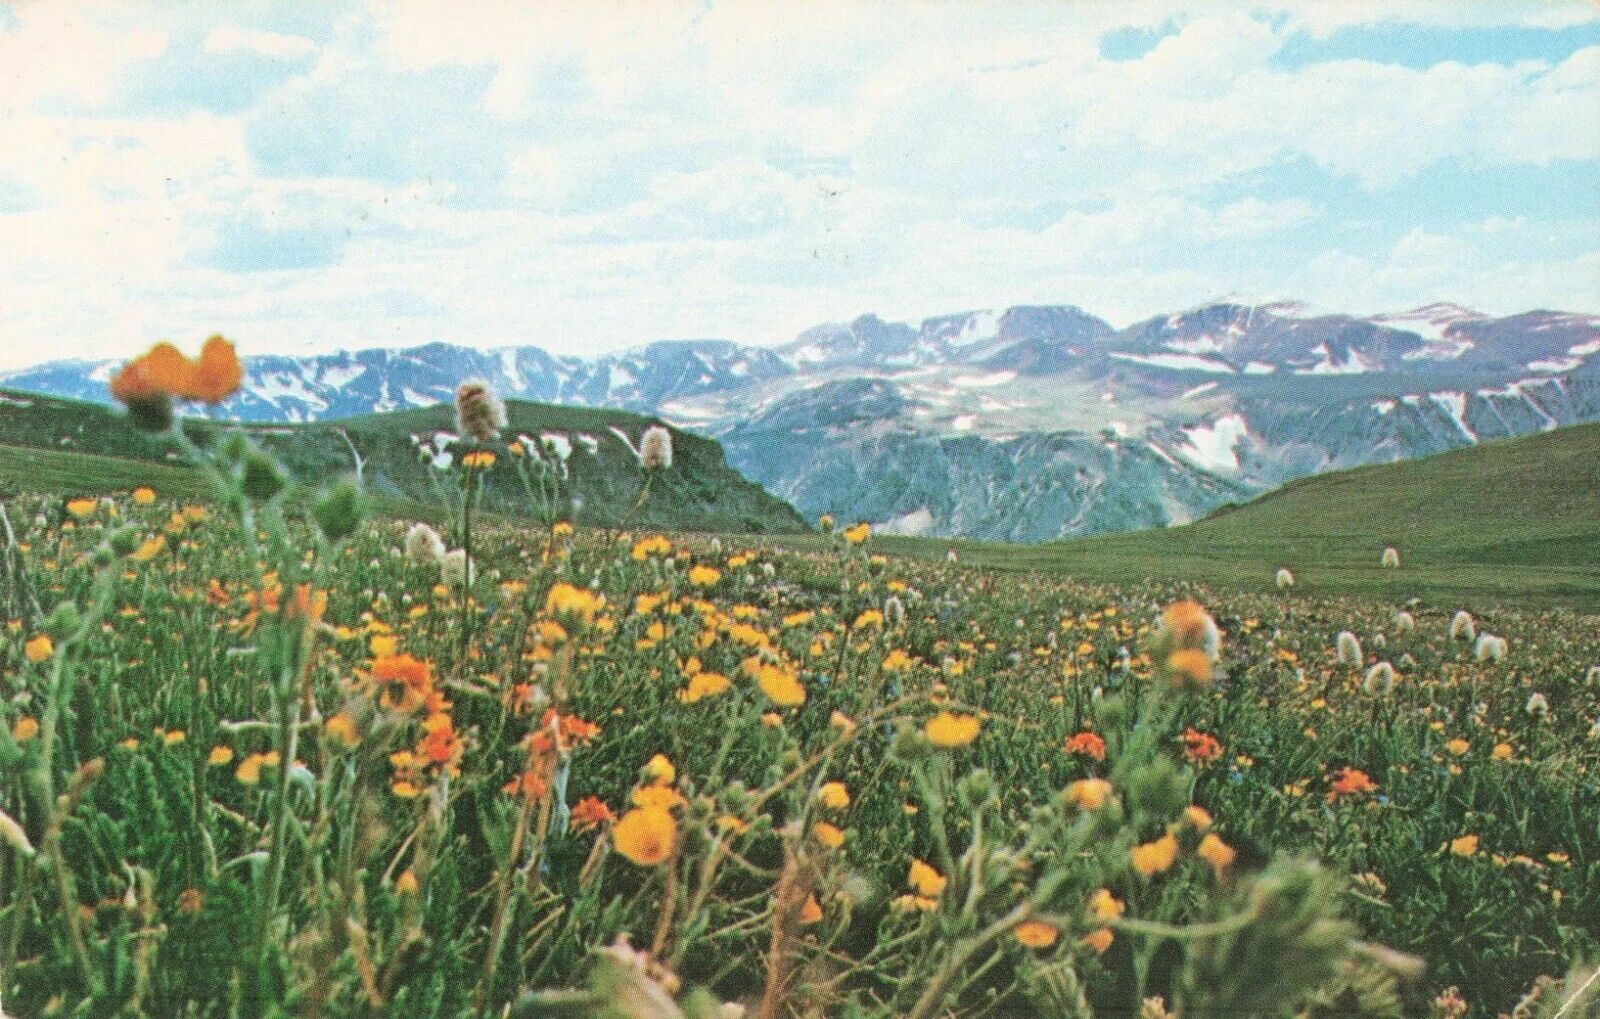 Field of Alpine Wild Flowers near Yellowstone National Park WY MT - Postcard